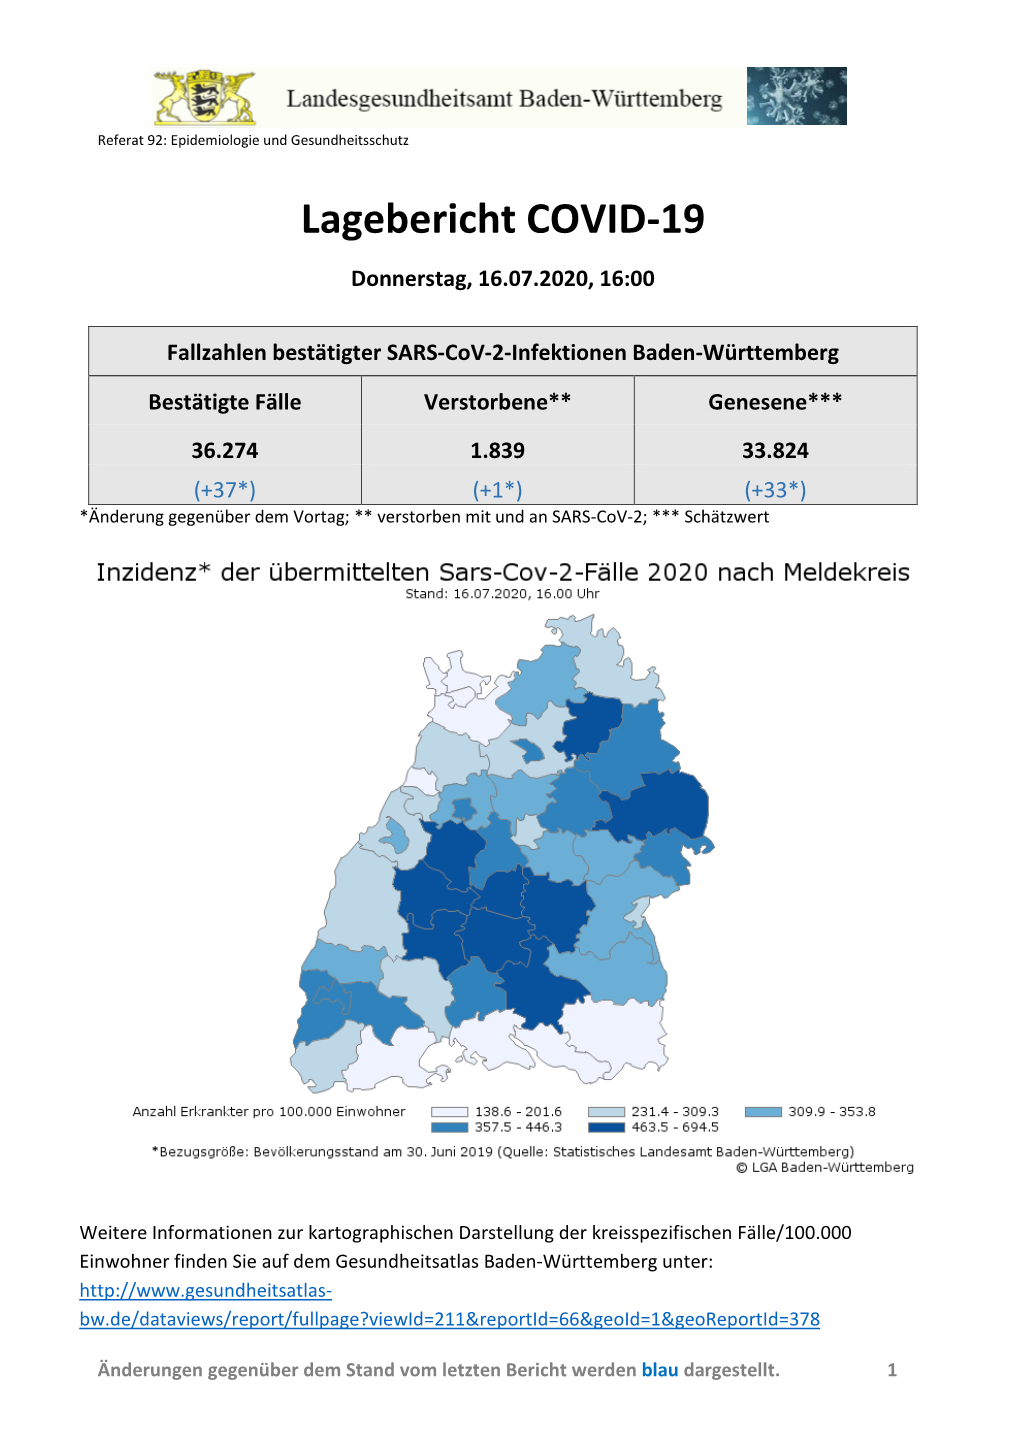 Lagebericht COVID-19 Baden-Württemberg 16.07.2020